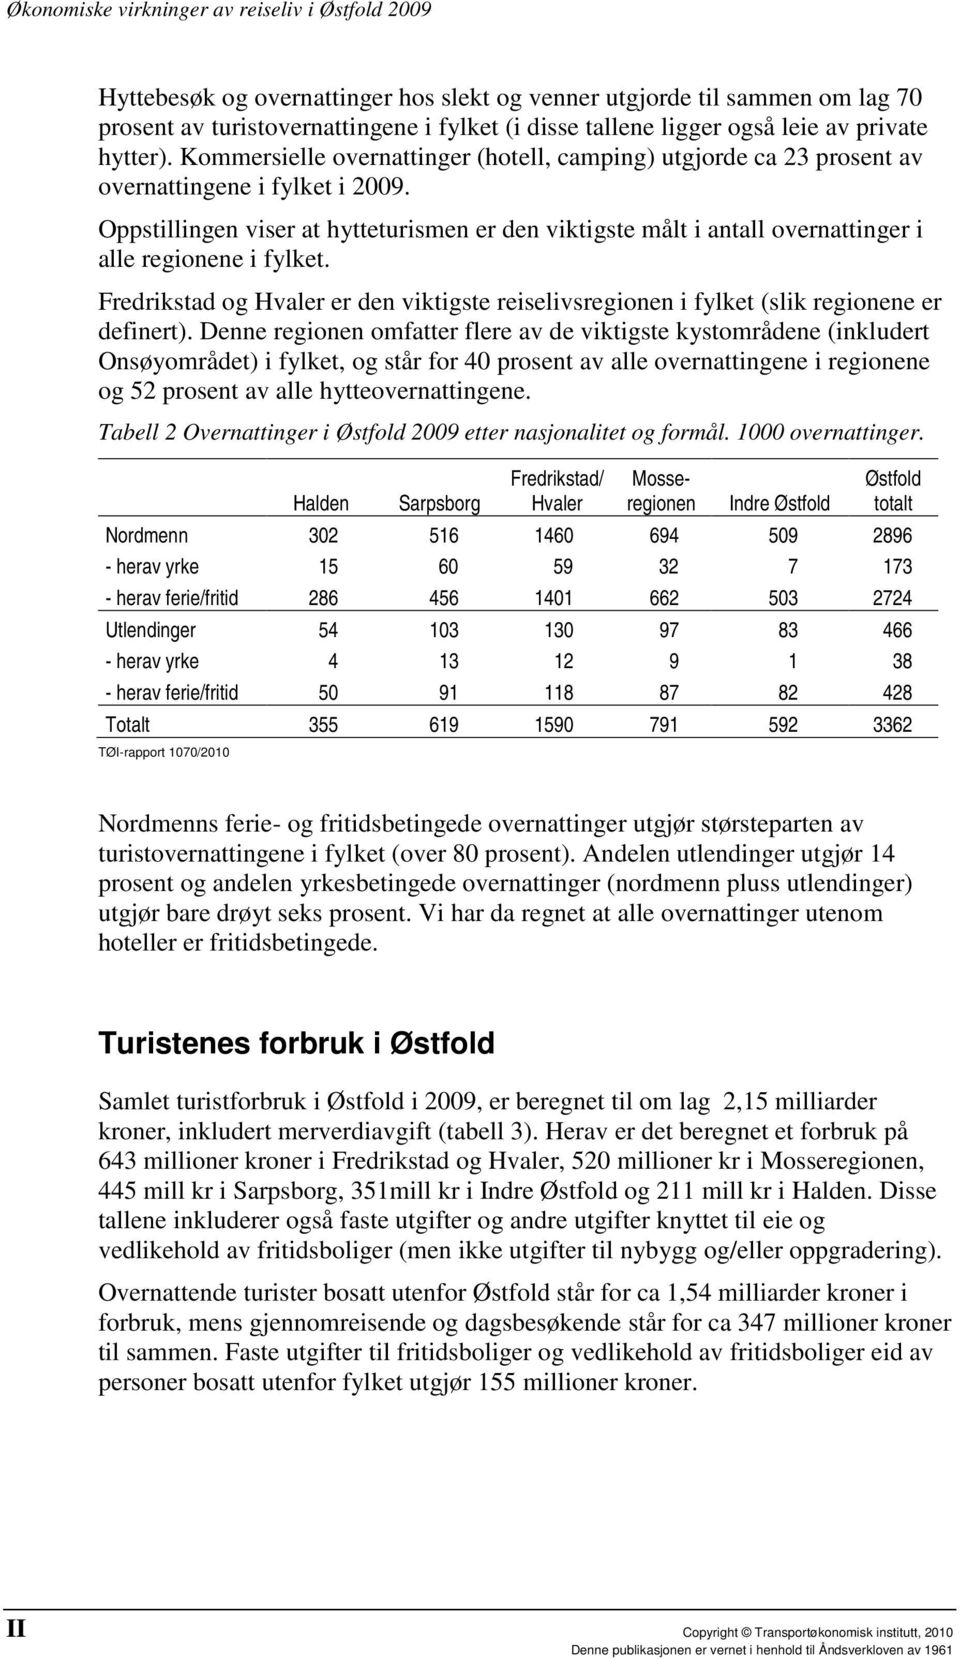 Oppstillingen viser at hytteturismen er den viktigste målt i antall overnattinger i alle regionene i fylket. Fredrikstad og er den viktigste reiselivsregionen i fylket (slik regionene er definert).